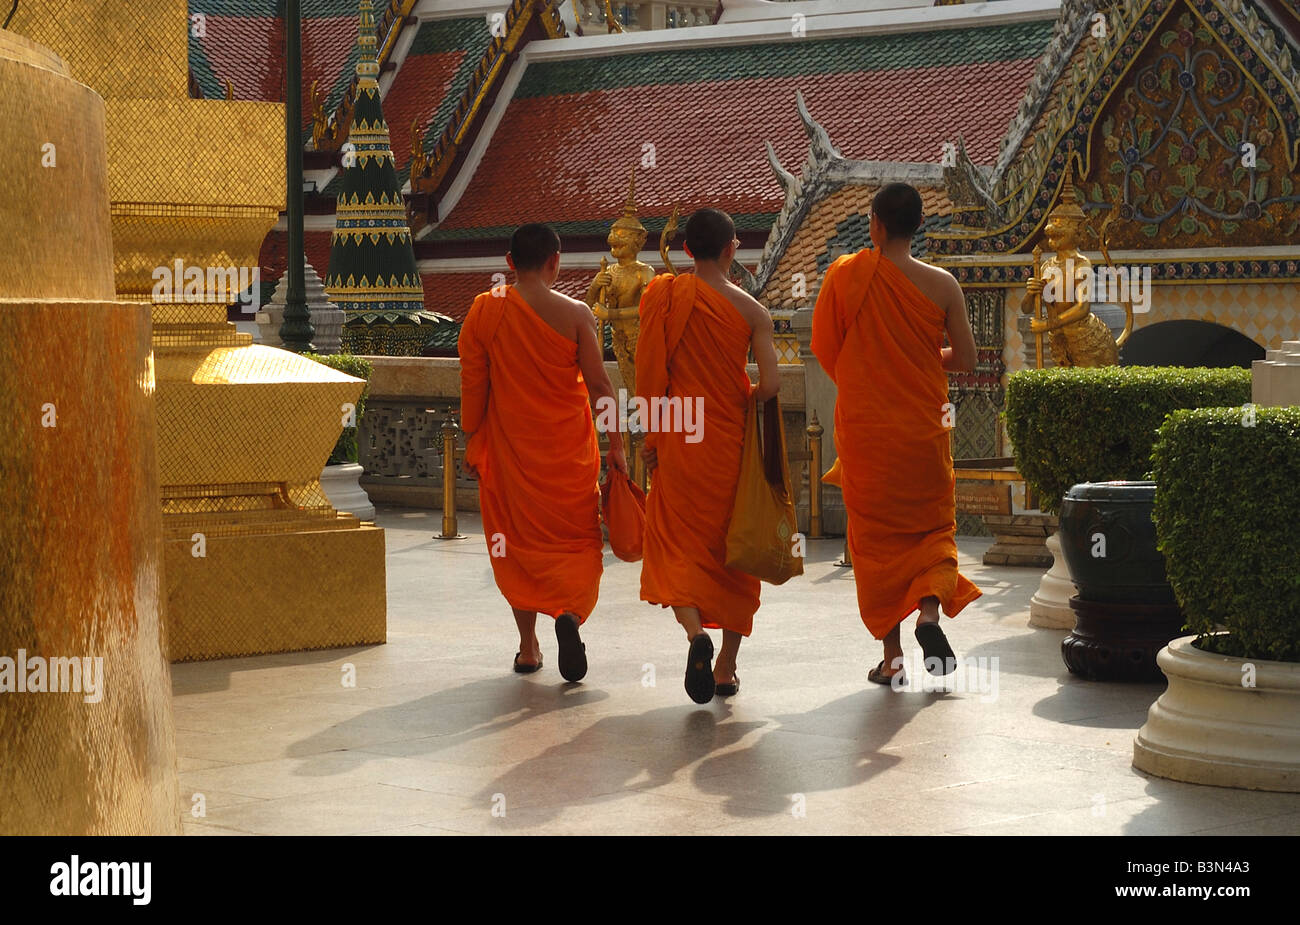 Trois moines bouddhistes du Grand Palais de Bangkok, Thaïlande Bouddhisme religion  robes orange robe safran religieux Spititual educati Photo Stock - Alamy